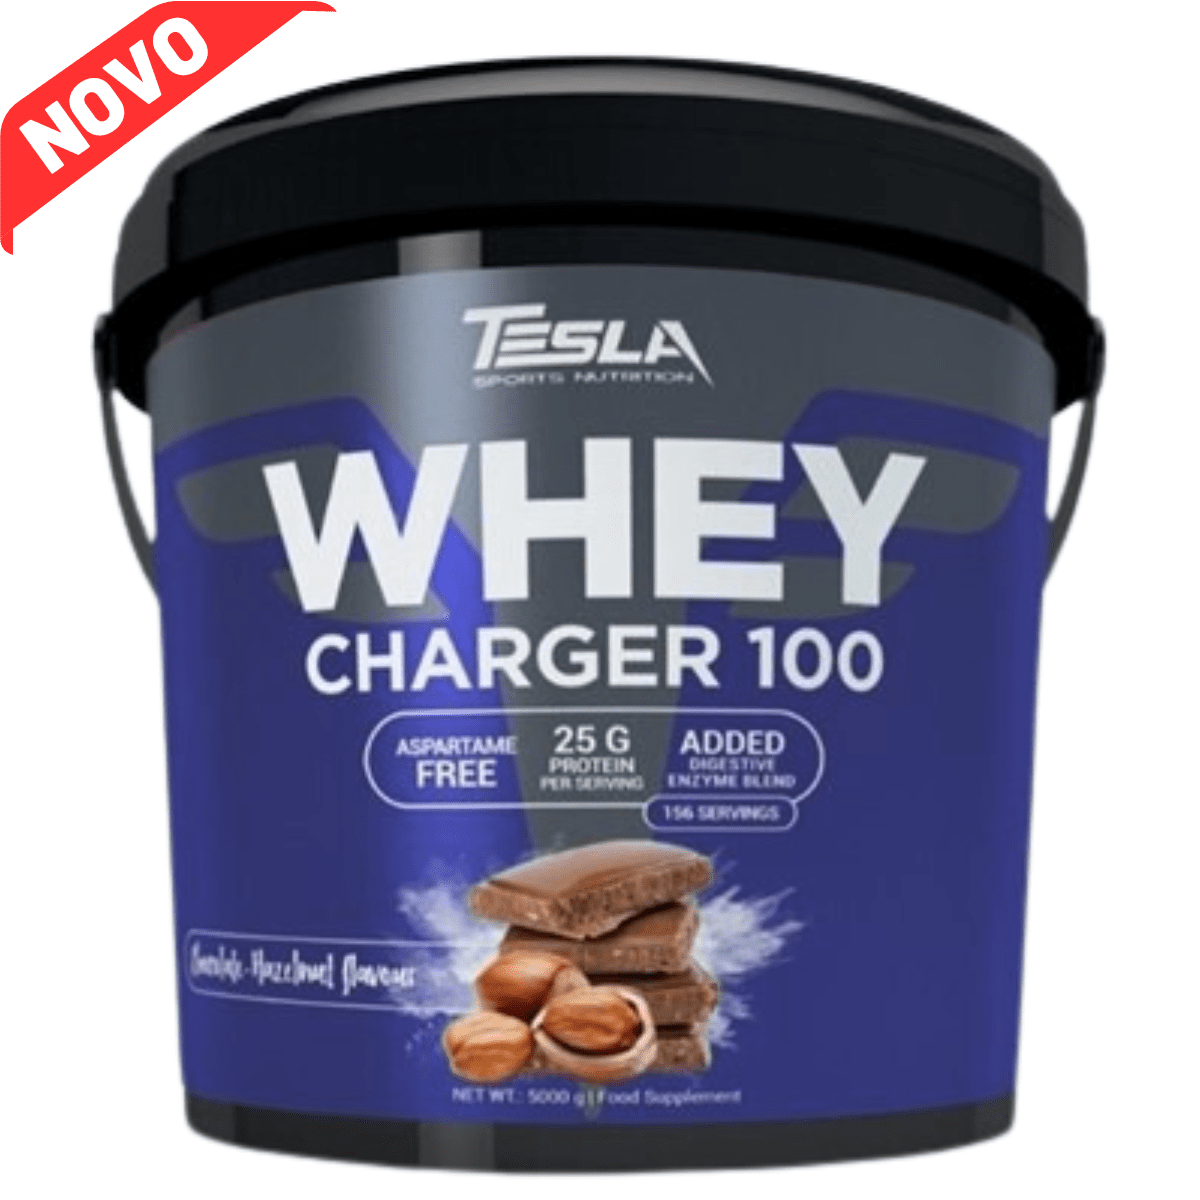 Tesla Whey Charger 100 - 0